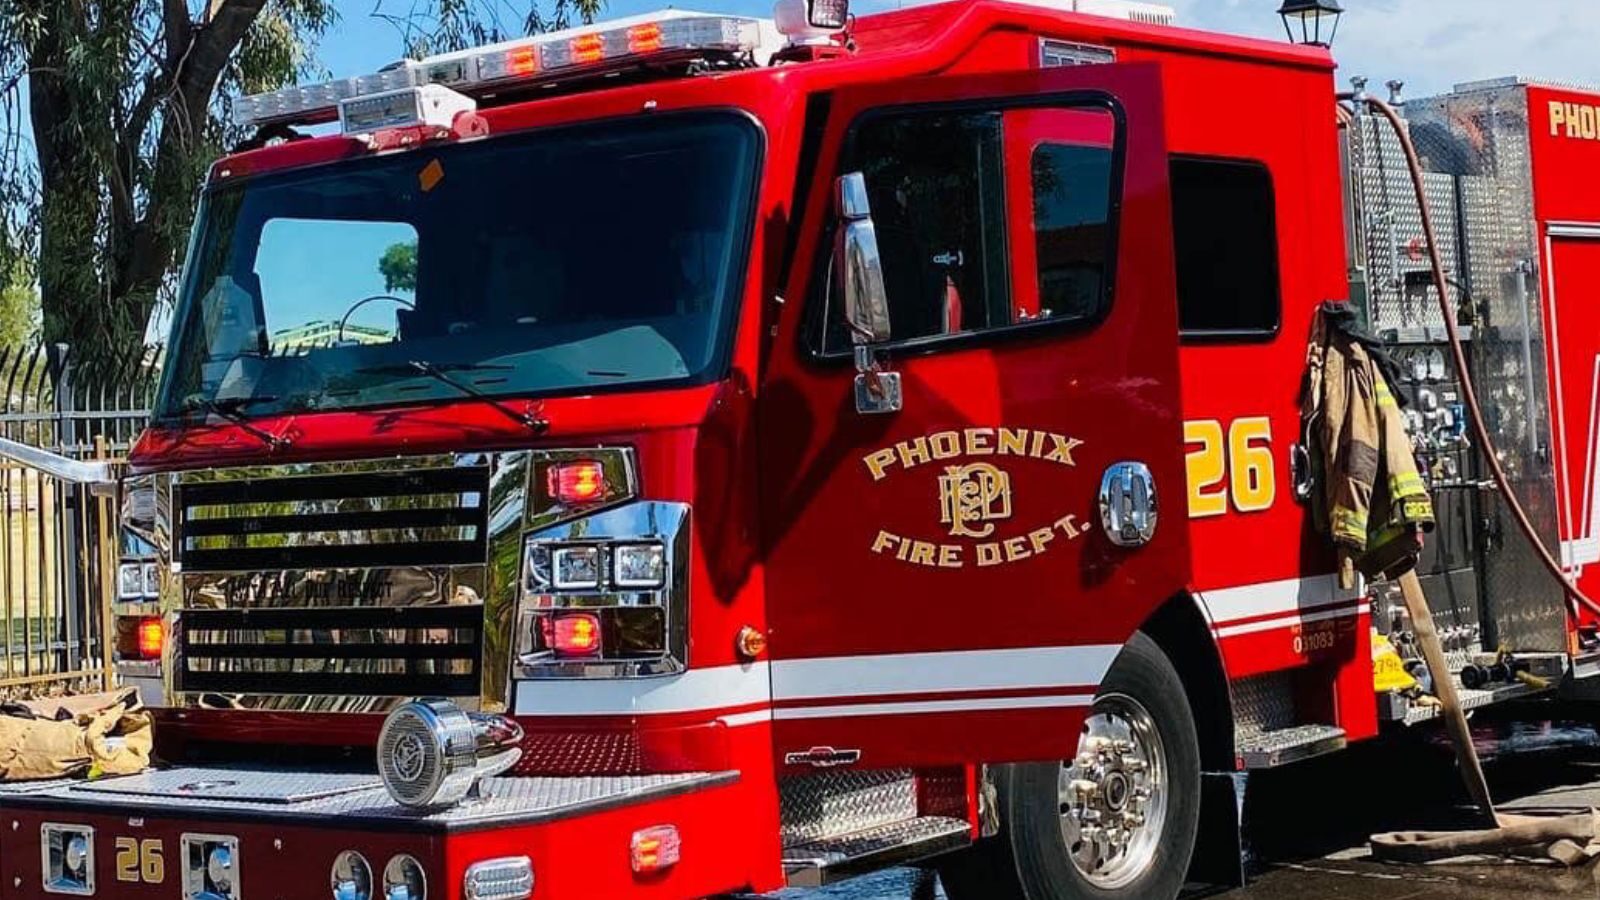 Phoenix Fire truck responds to distress...